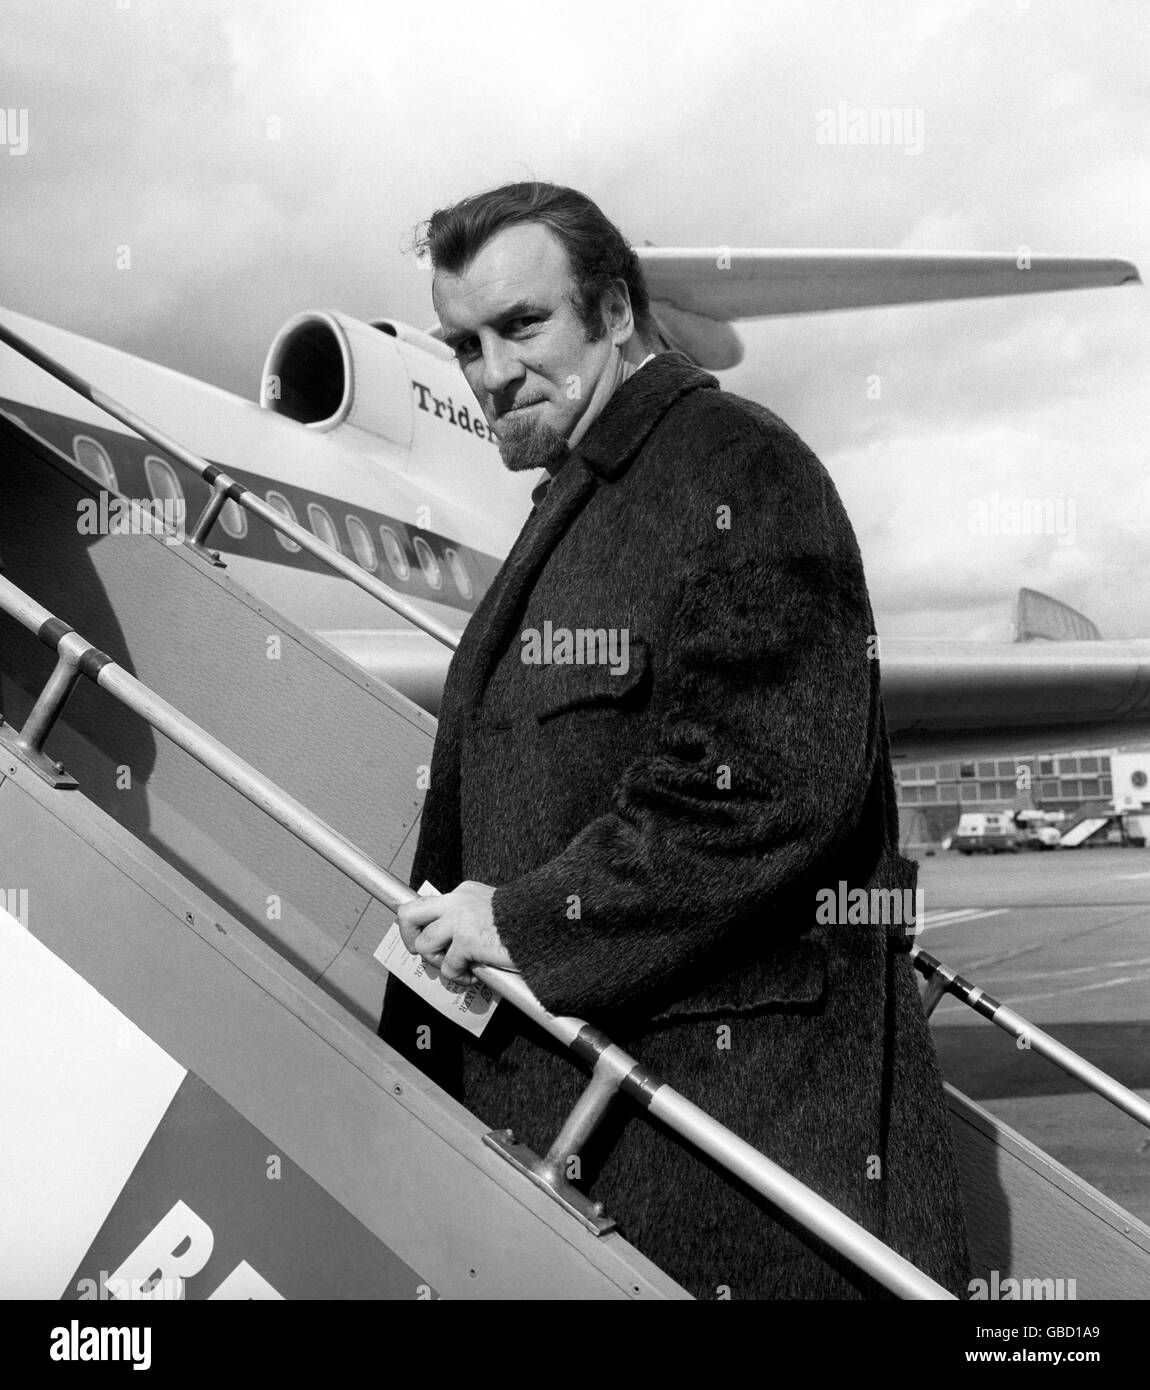 Musik - Acker Bilk - Flughafen Heathrow - London - 1967. Bärtiger Bandleader Acker Bilk verlässt den Flughafen Heathrow zu einer Konzertreise in Deutschland. Stockfoto